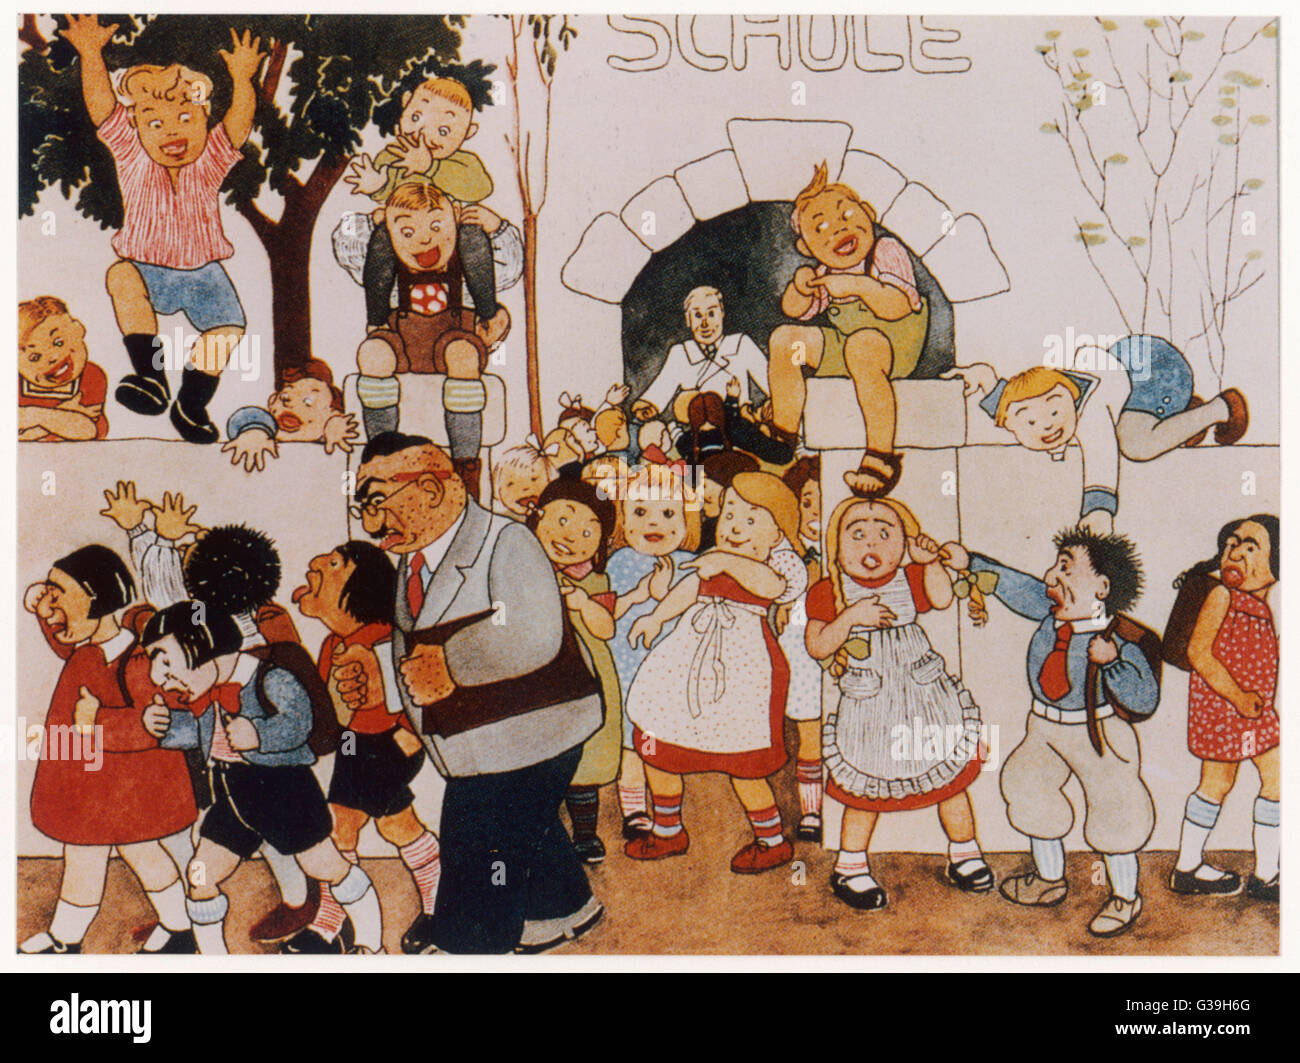 Nazi-inspirierten Schulbuch Darstellung hässliche jüdische Schülerinnen und Schüler und ihre Lehrer von Schule, die von deutschen Kindern verspottet weggetrieben.      Datum: 1935 Stockfoto